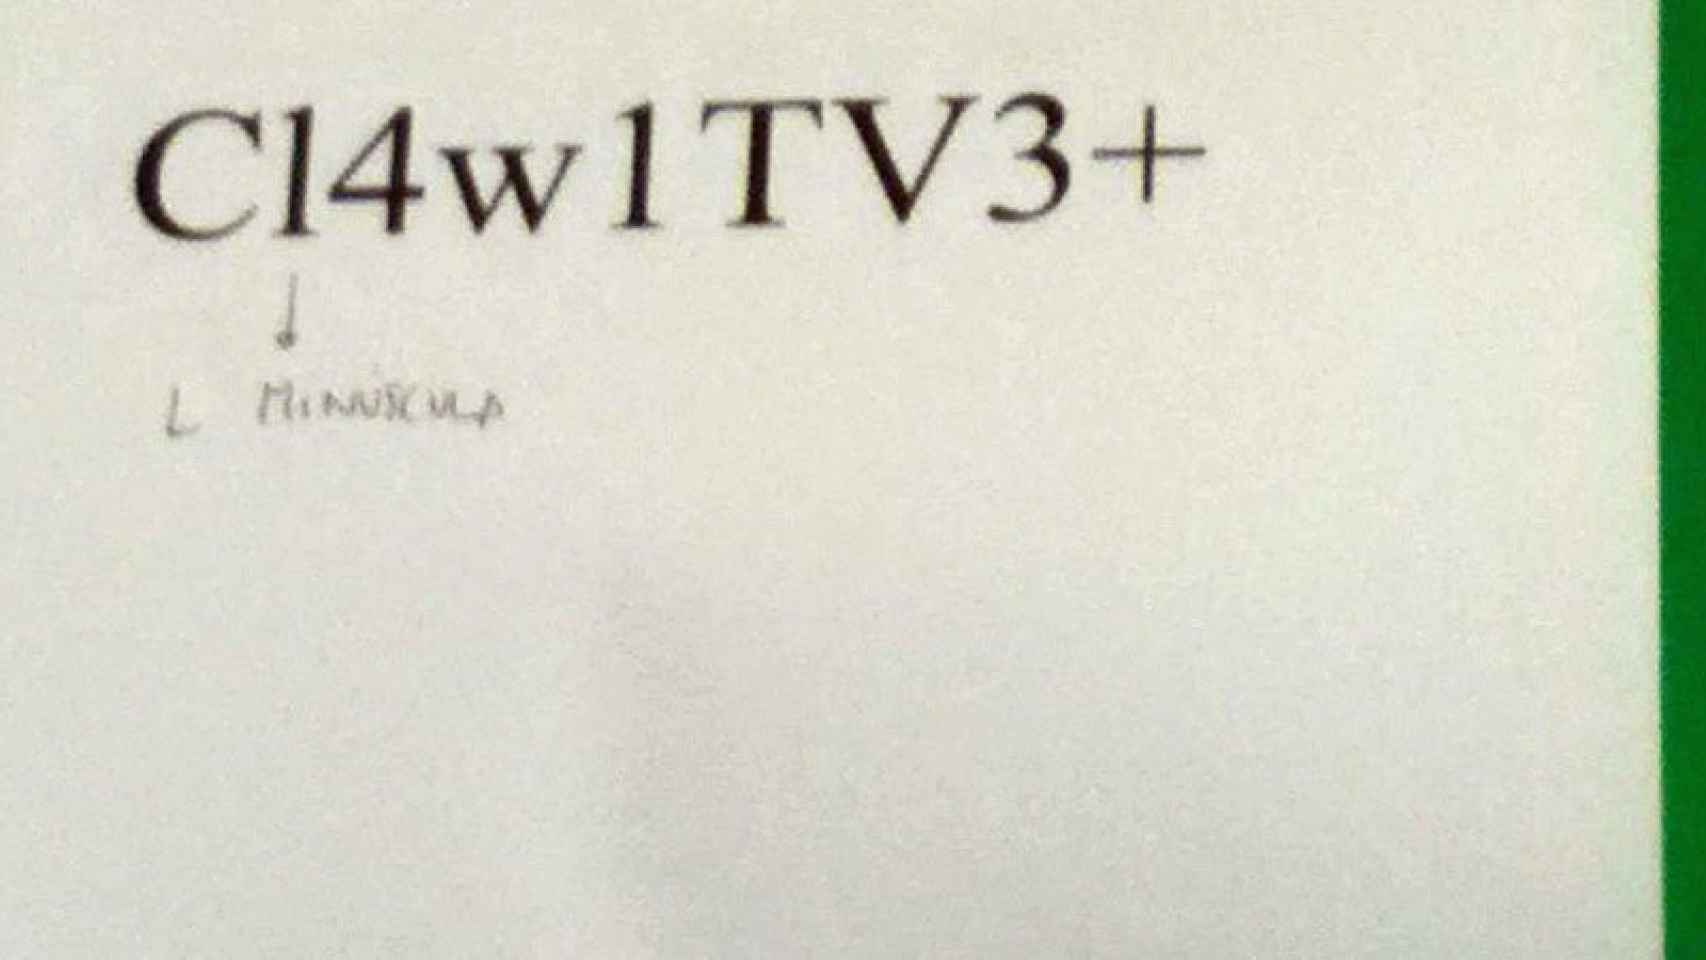 13TV y TV3, unidos por el wifi